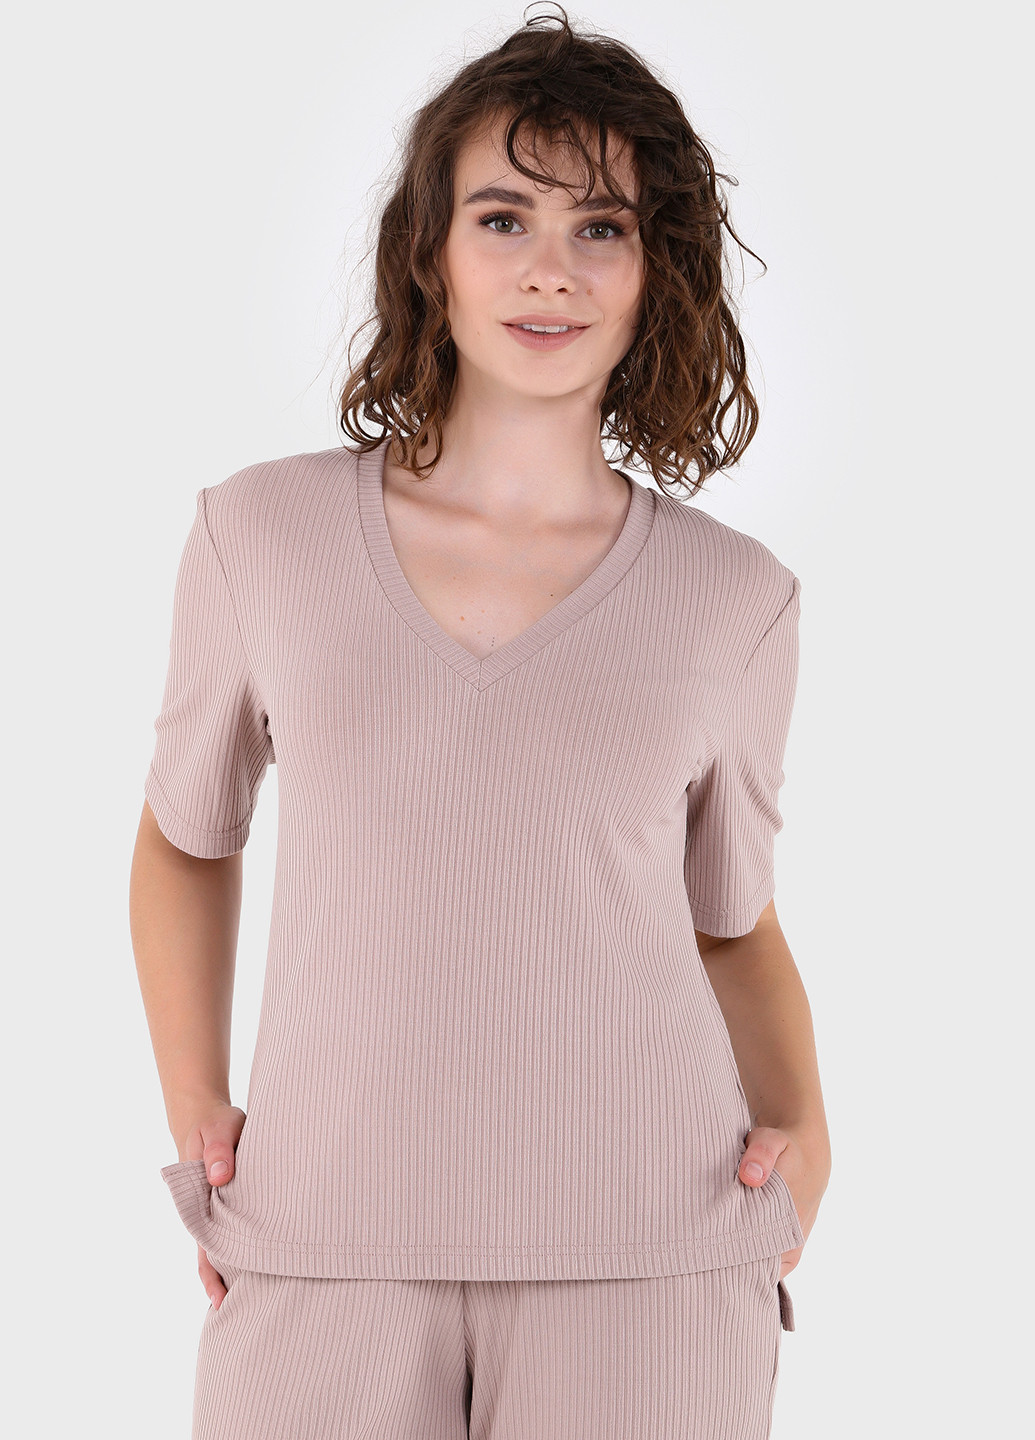 Бежевая летняя легкая футболка женская в рубчик 800000023 с коротким рукавом Merlini Корунья